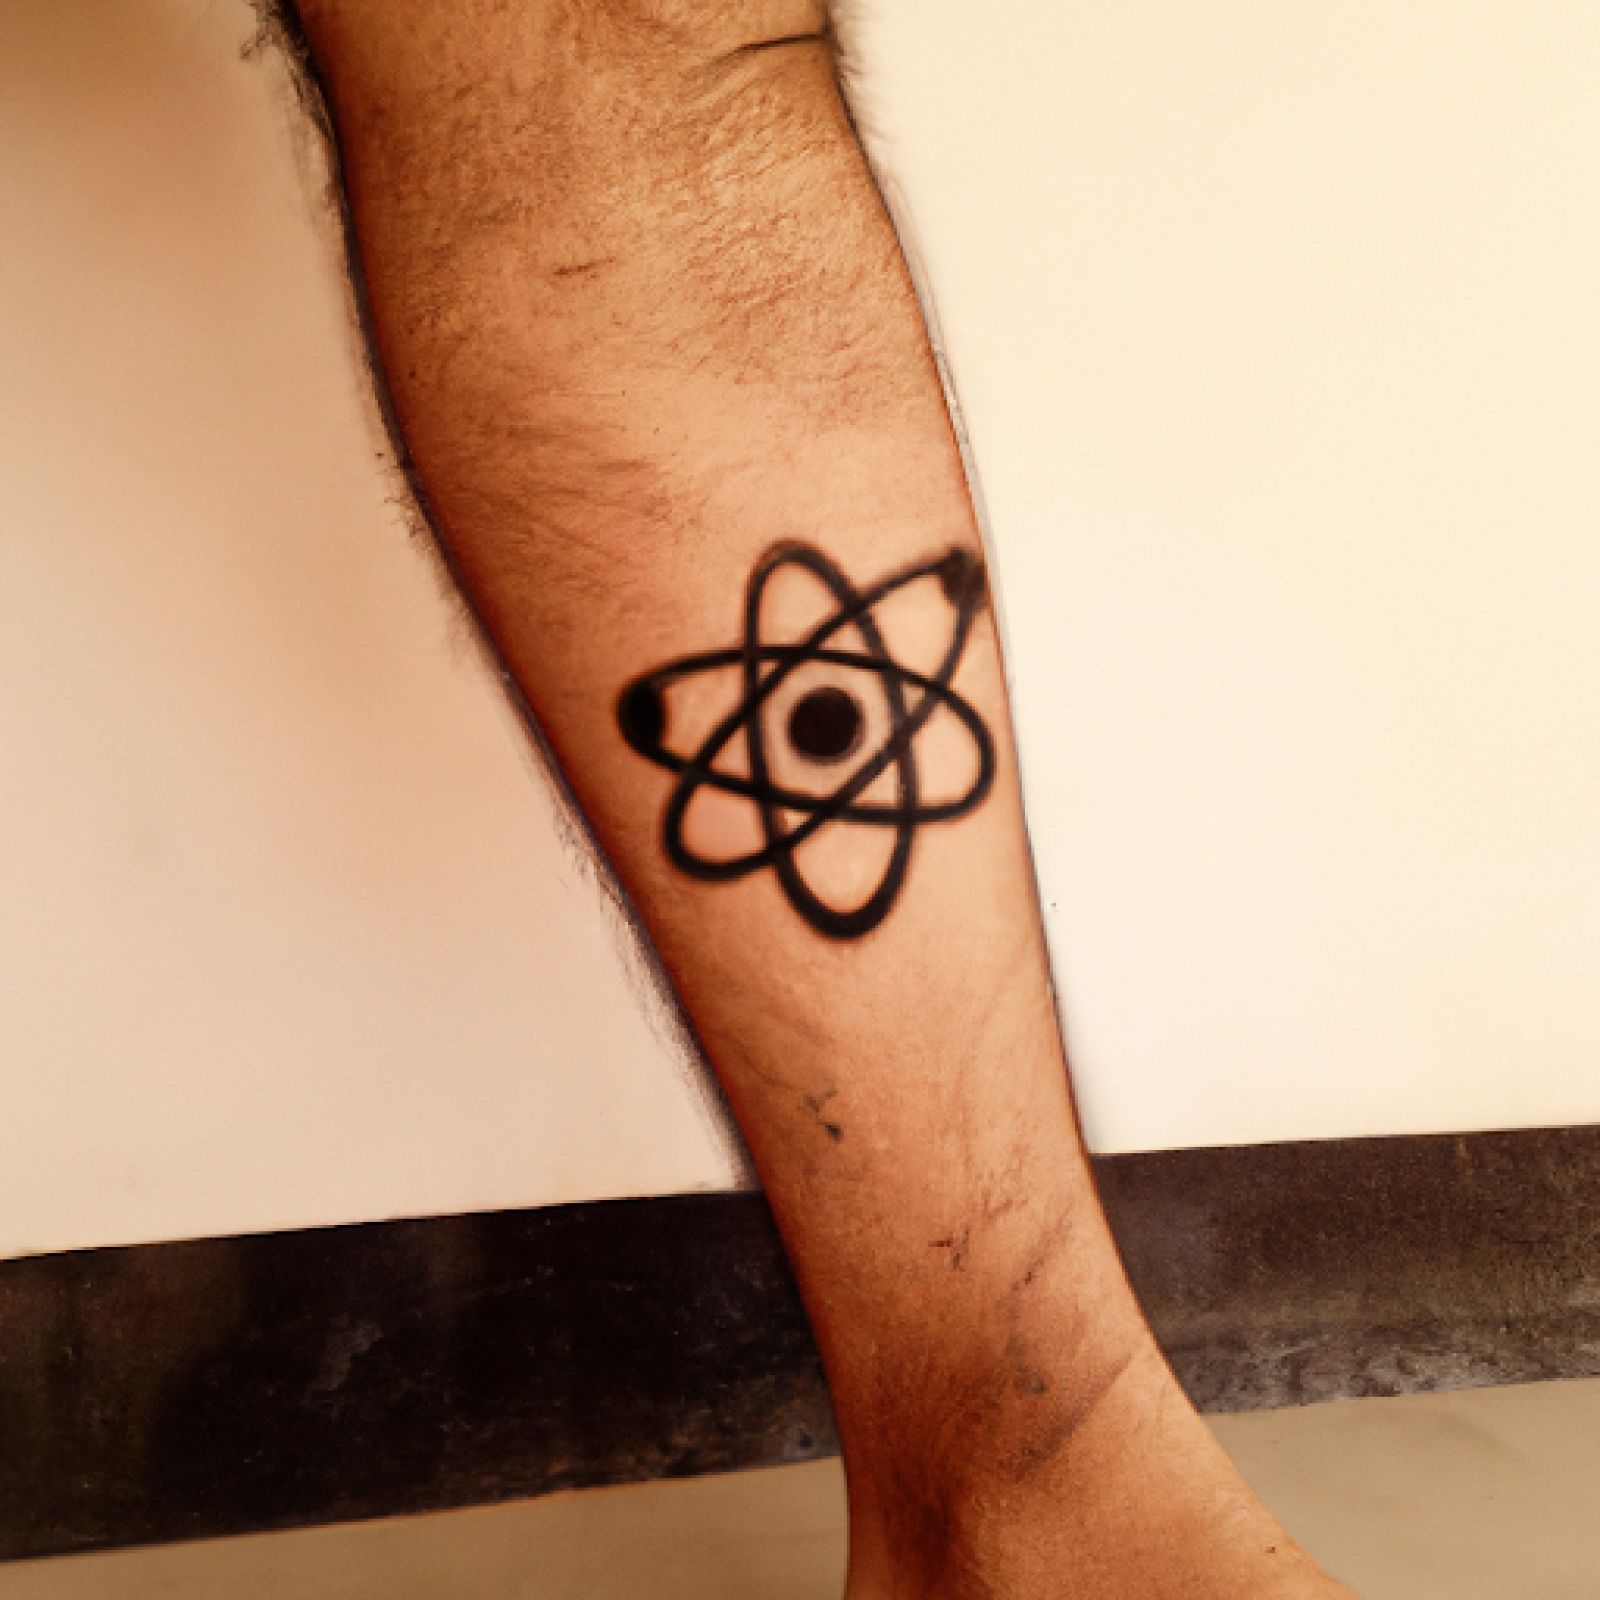 Atom tattoo on leg for men